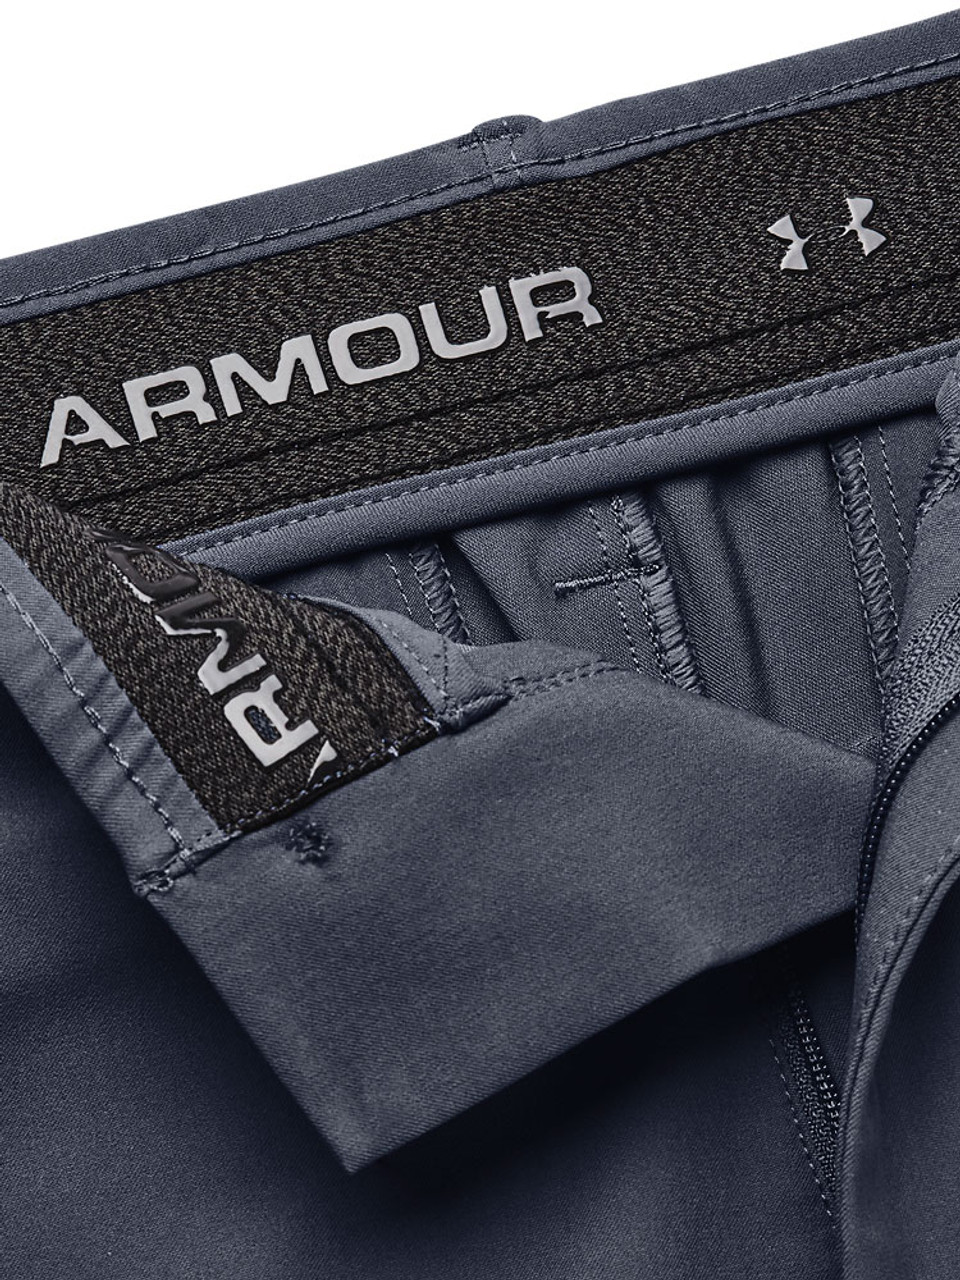 Under Armour Drive Shorts - Downpour Grey